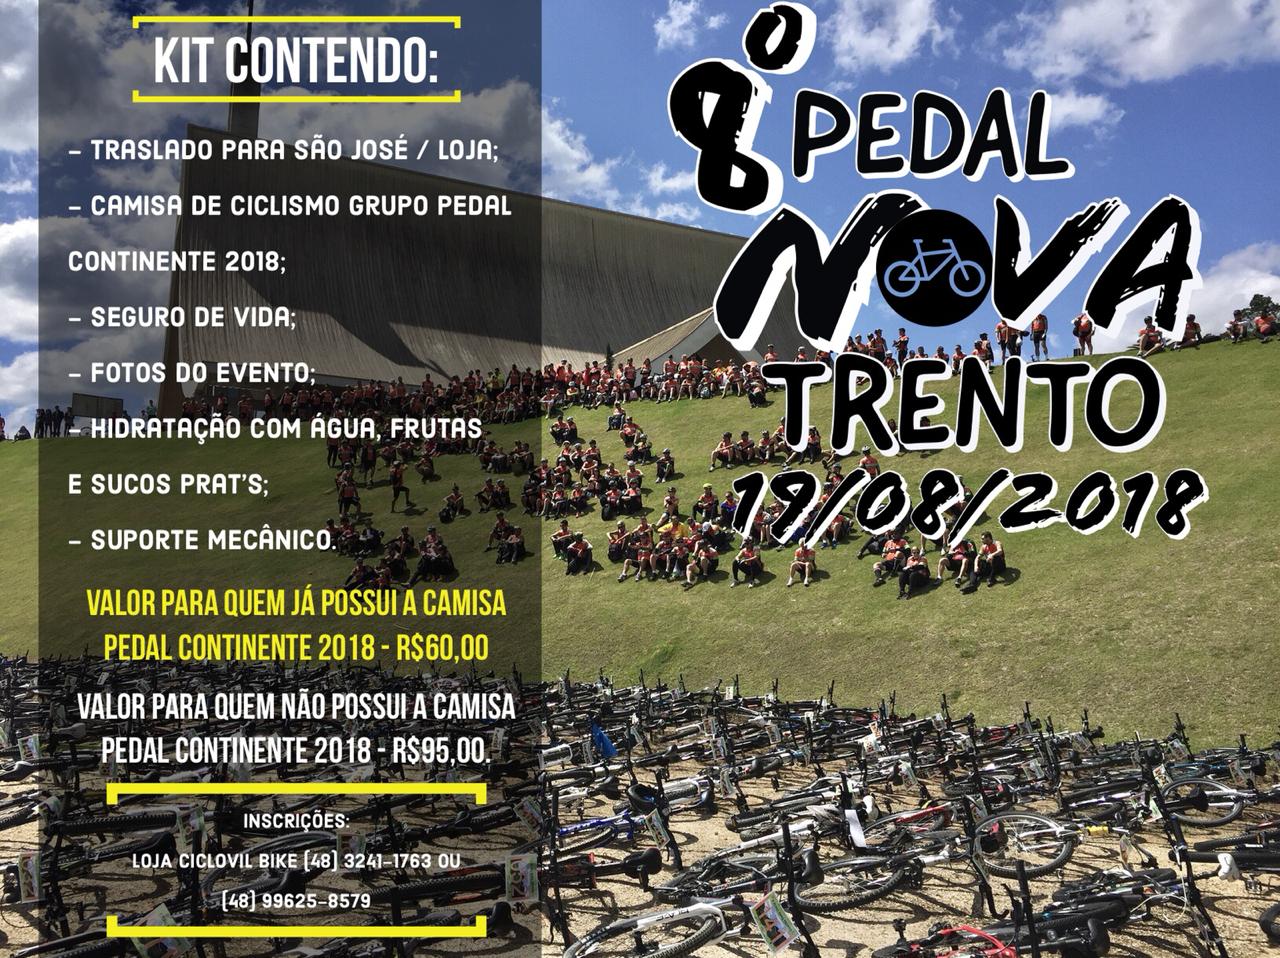 Pedal Nova Trento - Turismo on line